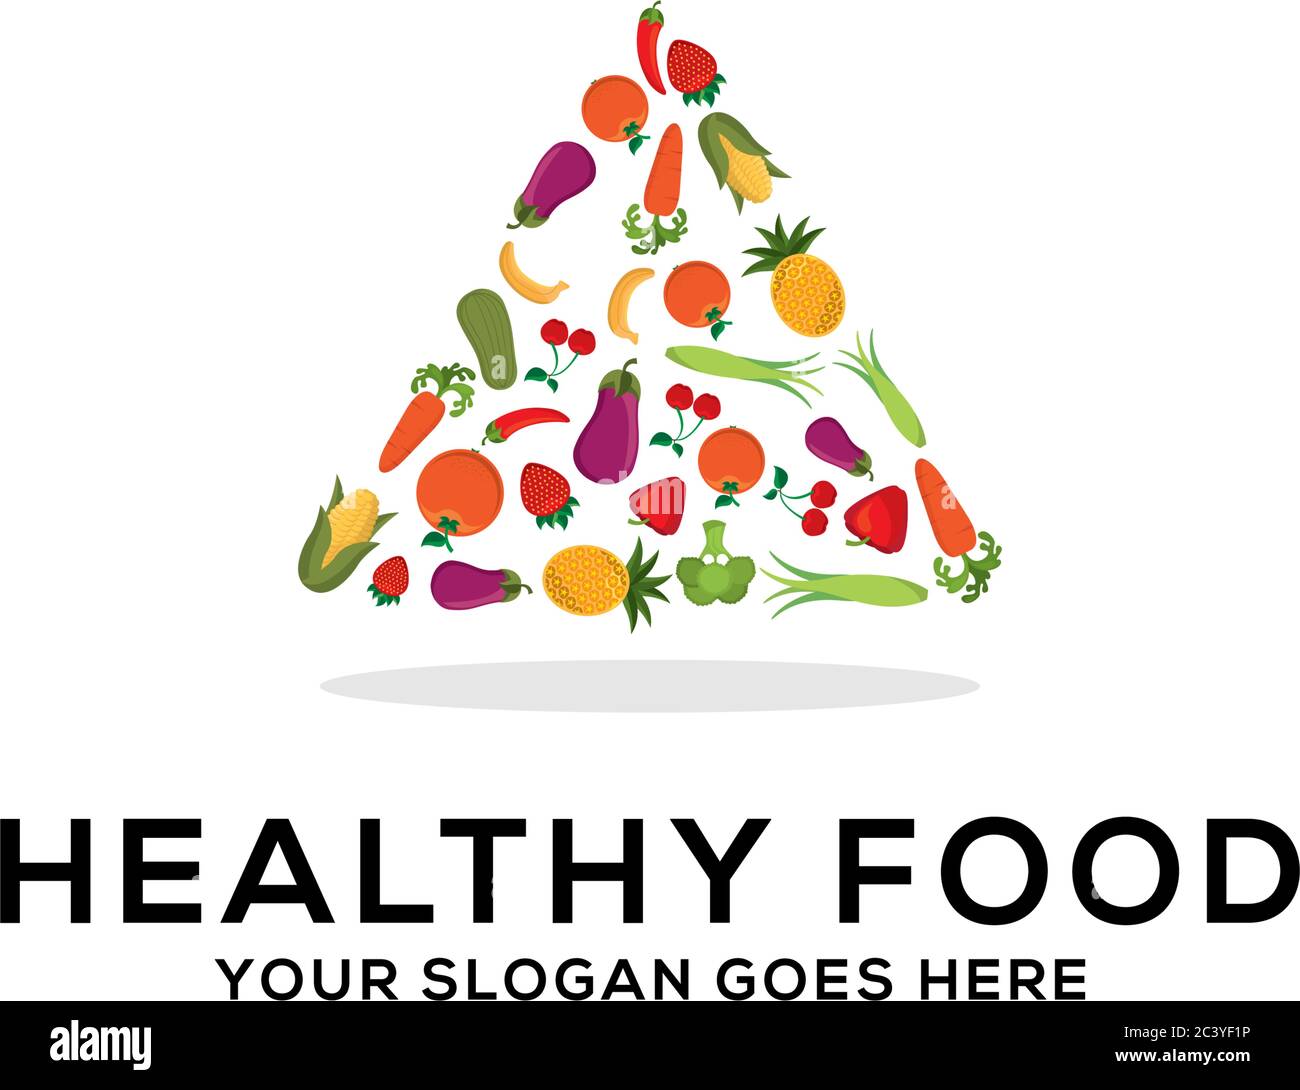 Gesunde Lebensmittel Logo Design Vektor, frisches Obst und Gemüse Zeichnung Kreis abstrakte Illustration Stock Vektor